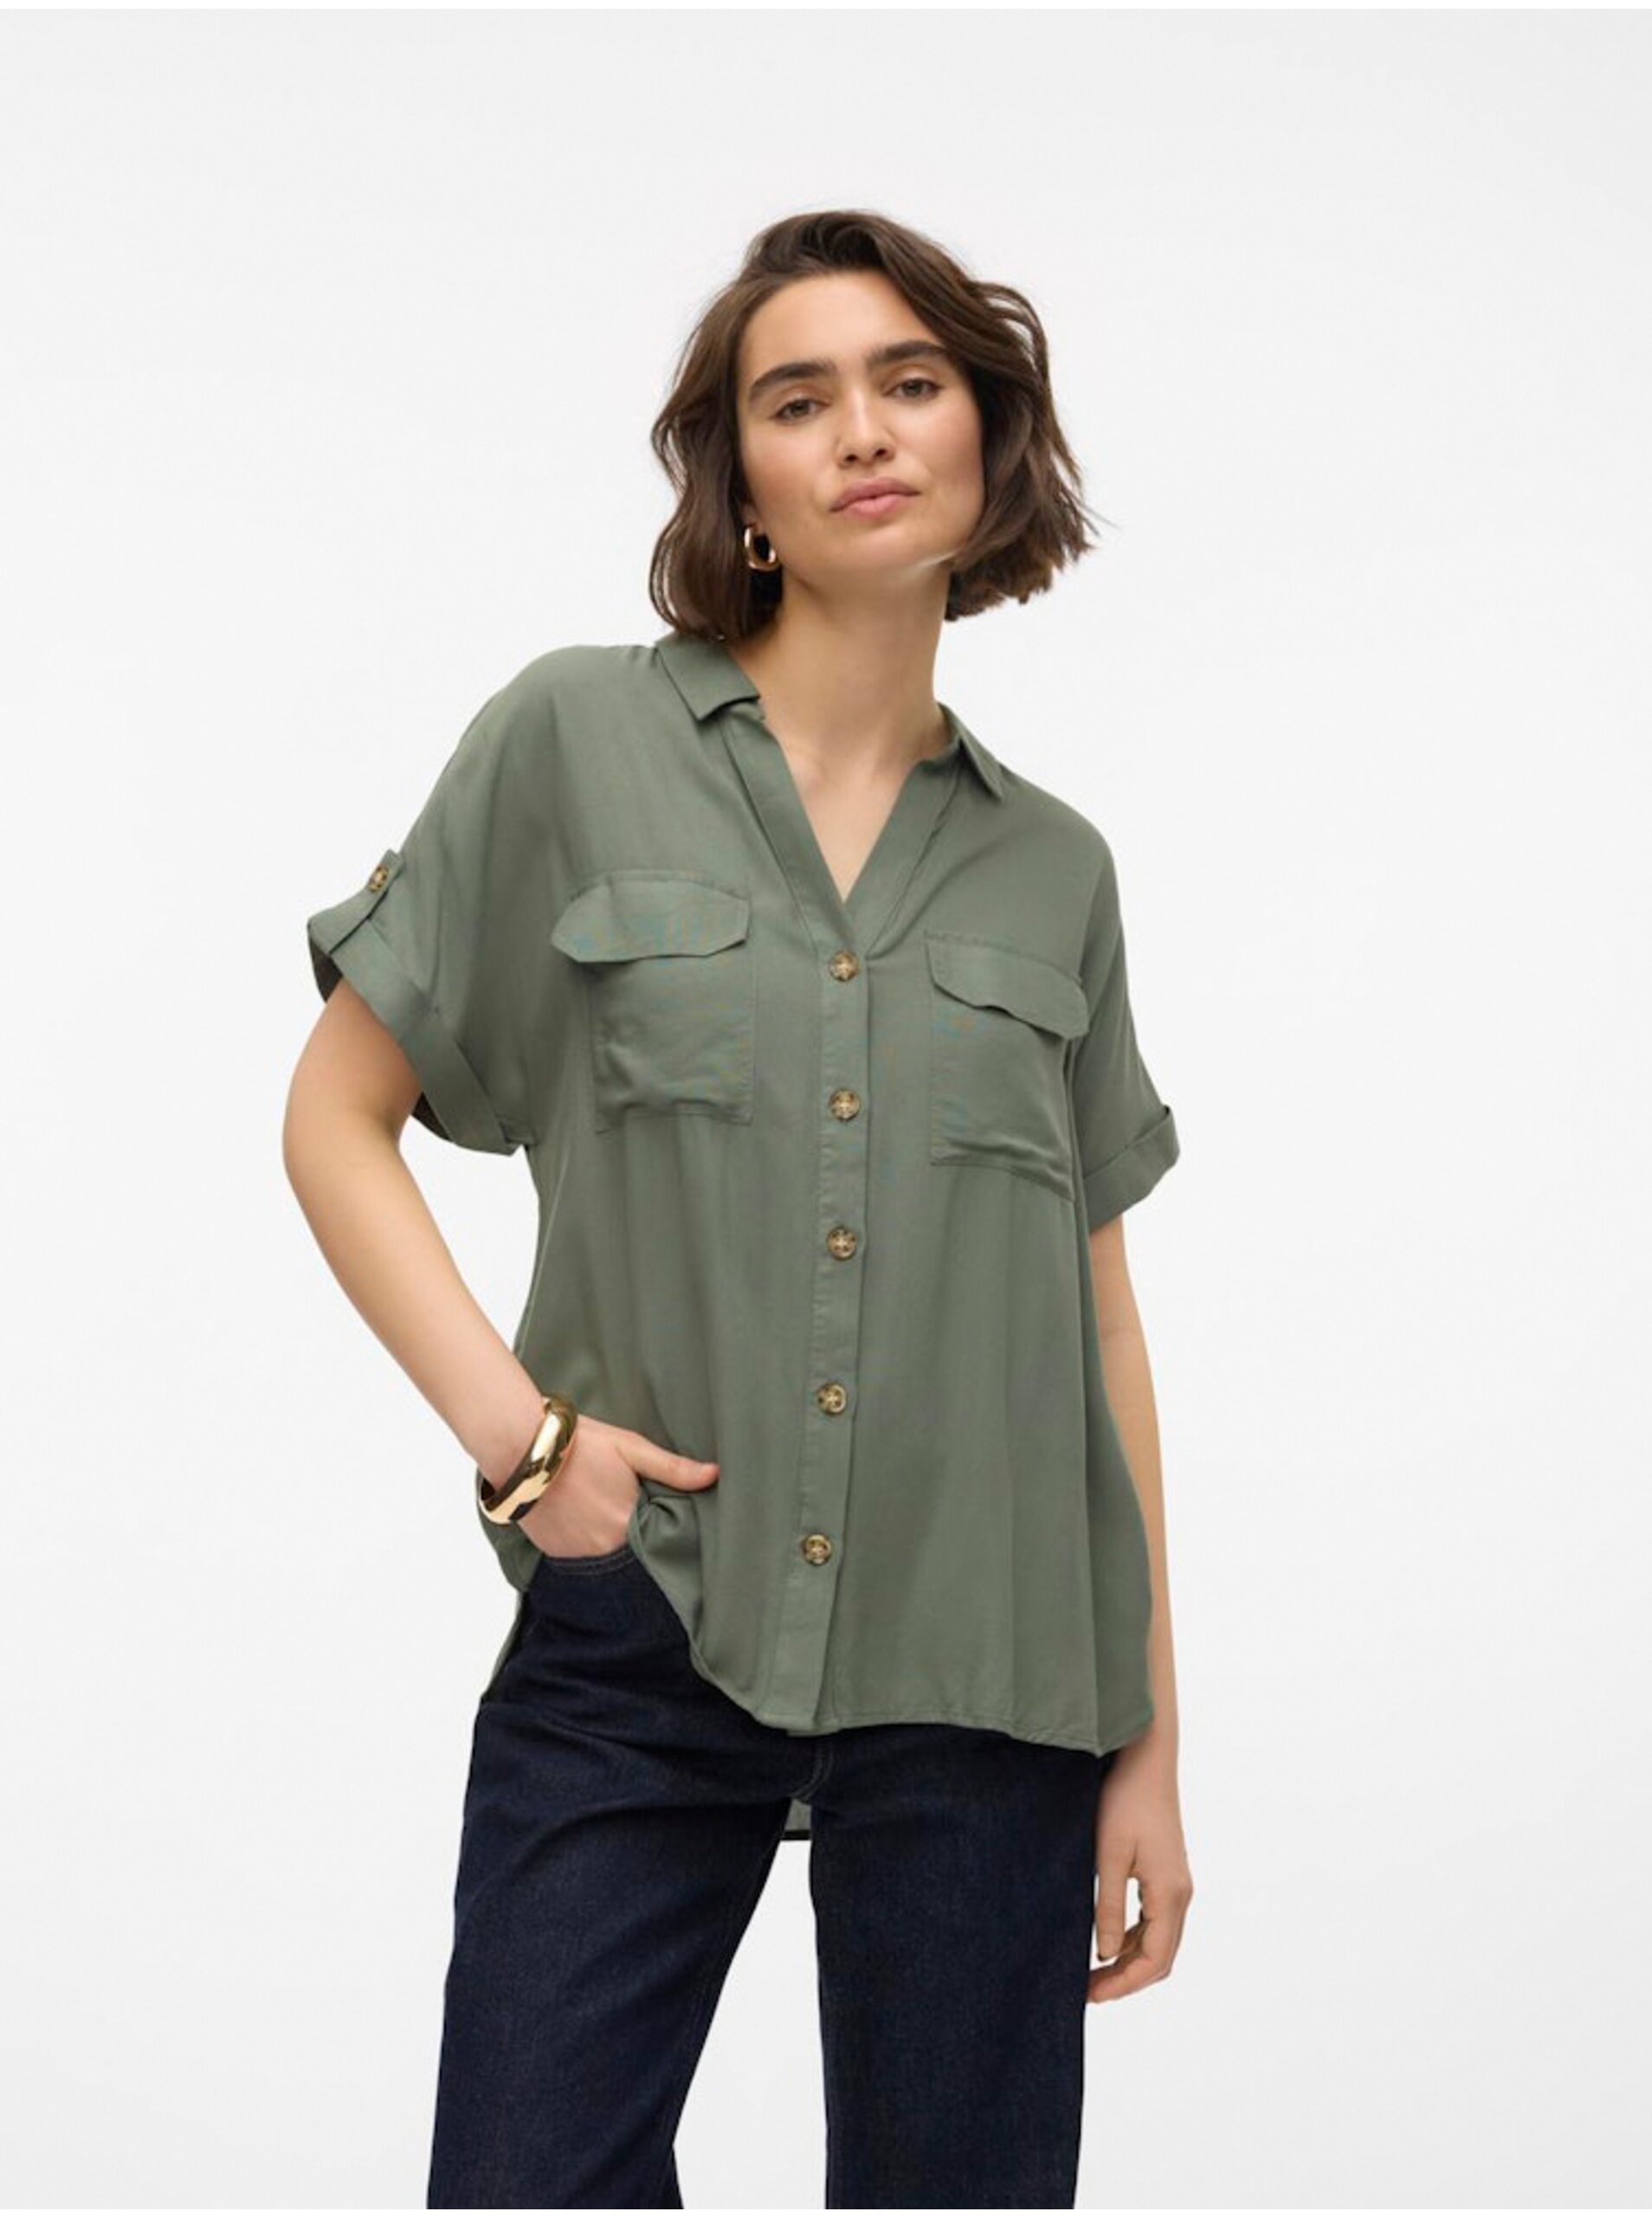 Vero Women's Green Shirt Moda Bumpy - Women